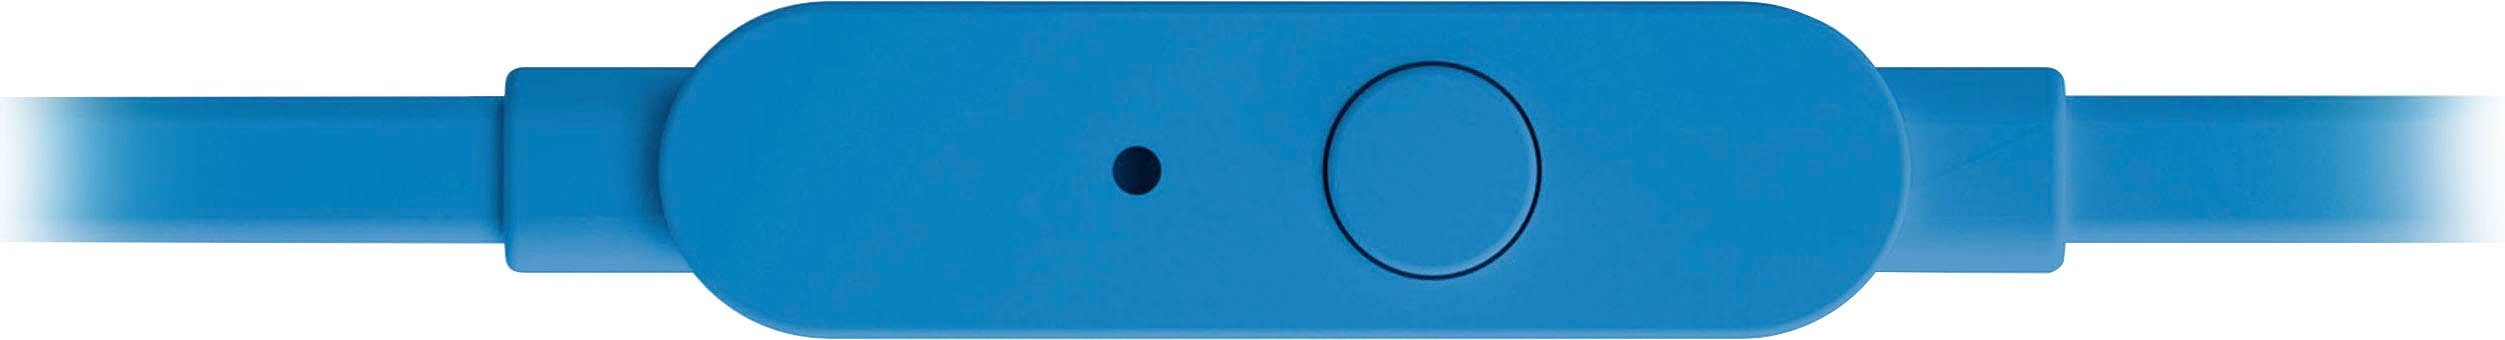 T110 JBL In-Ear-Kopfhörer blau